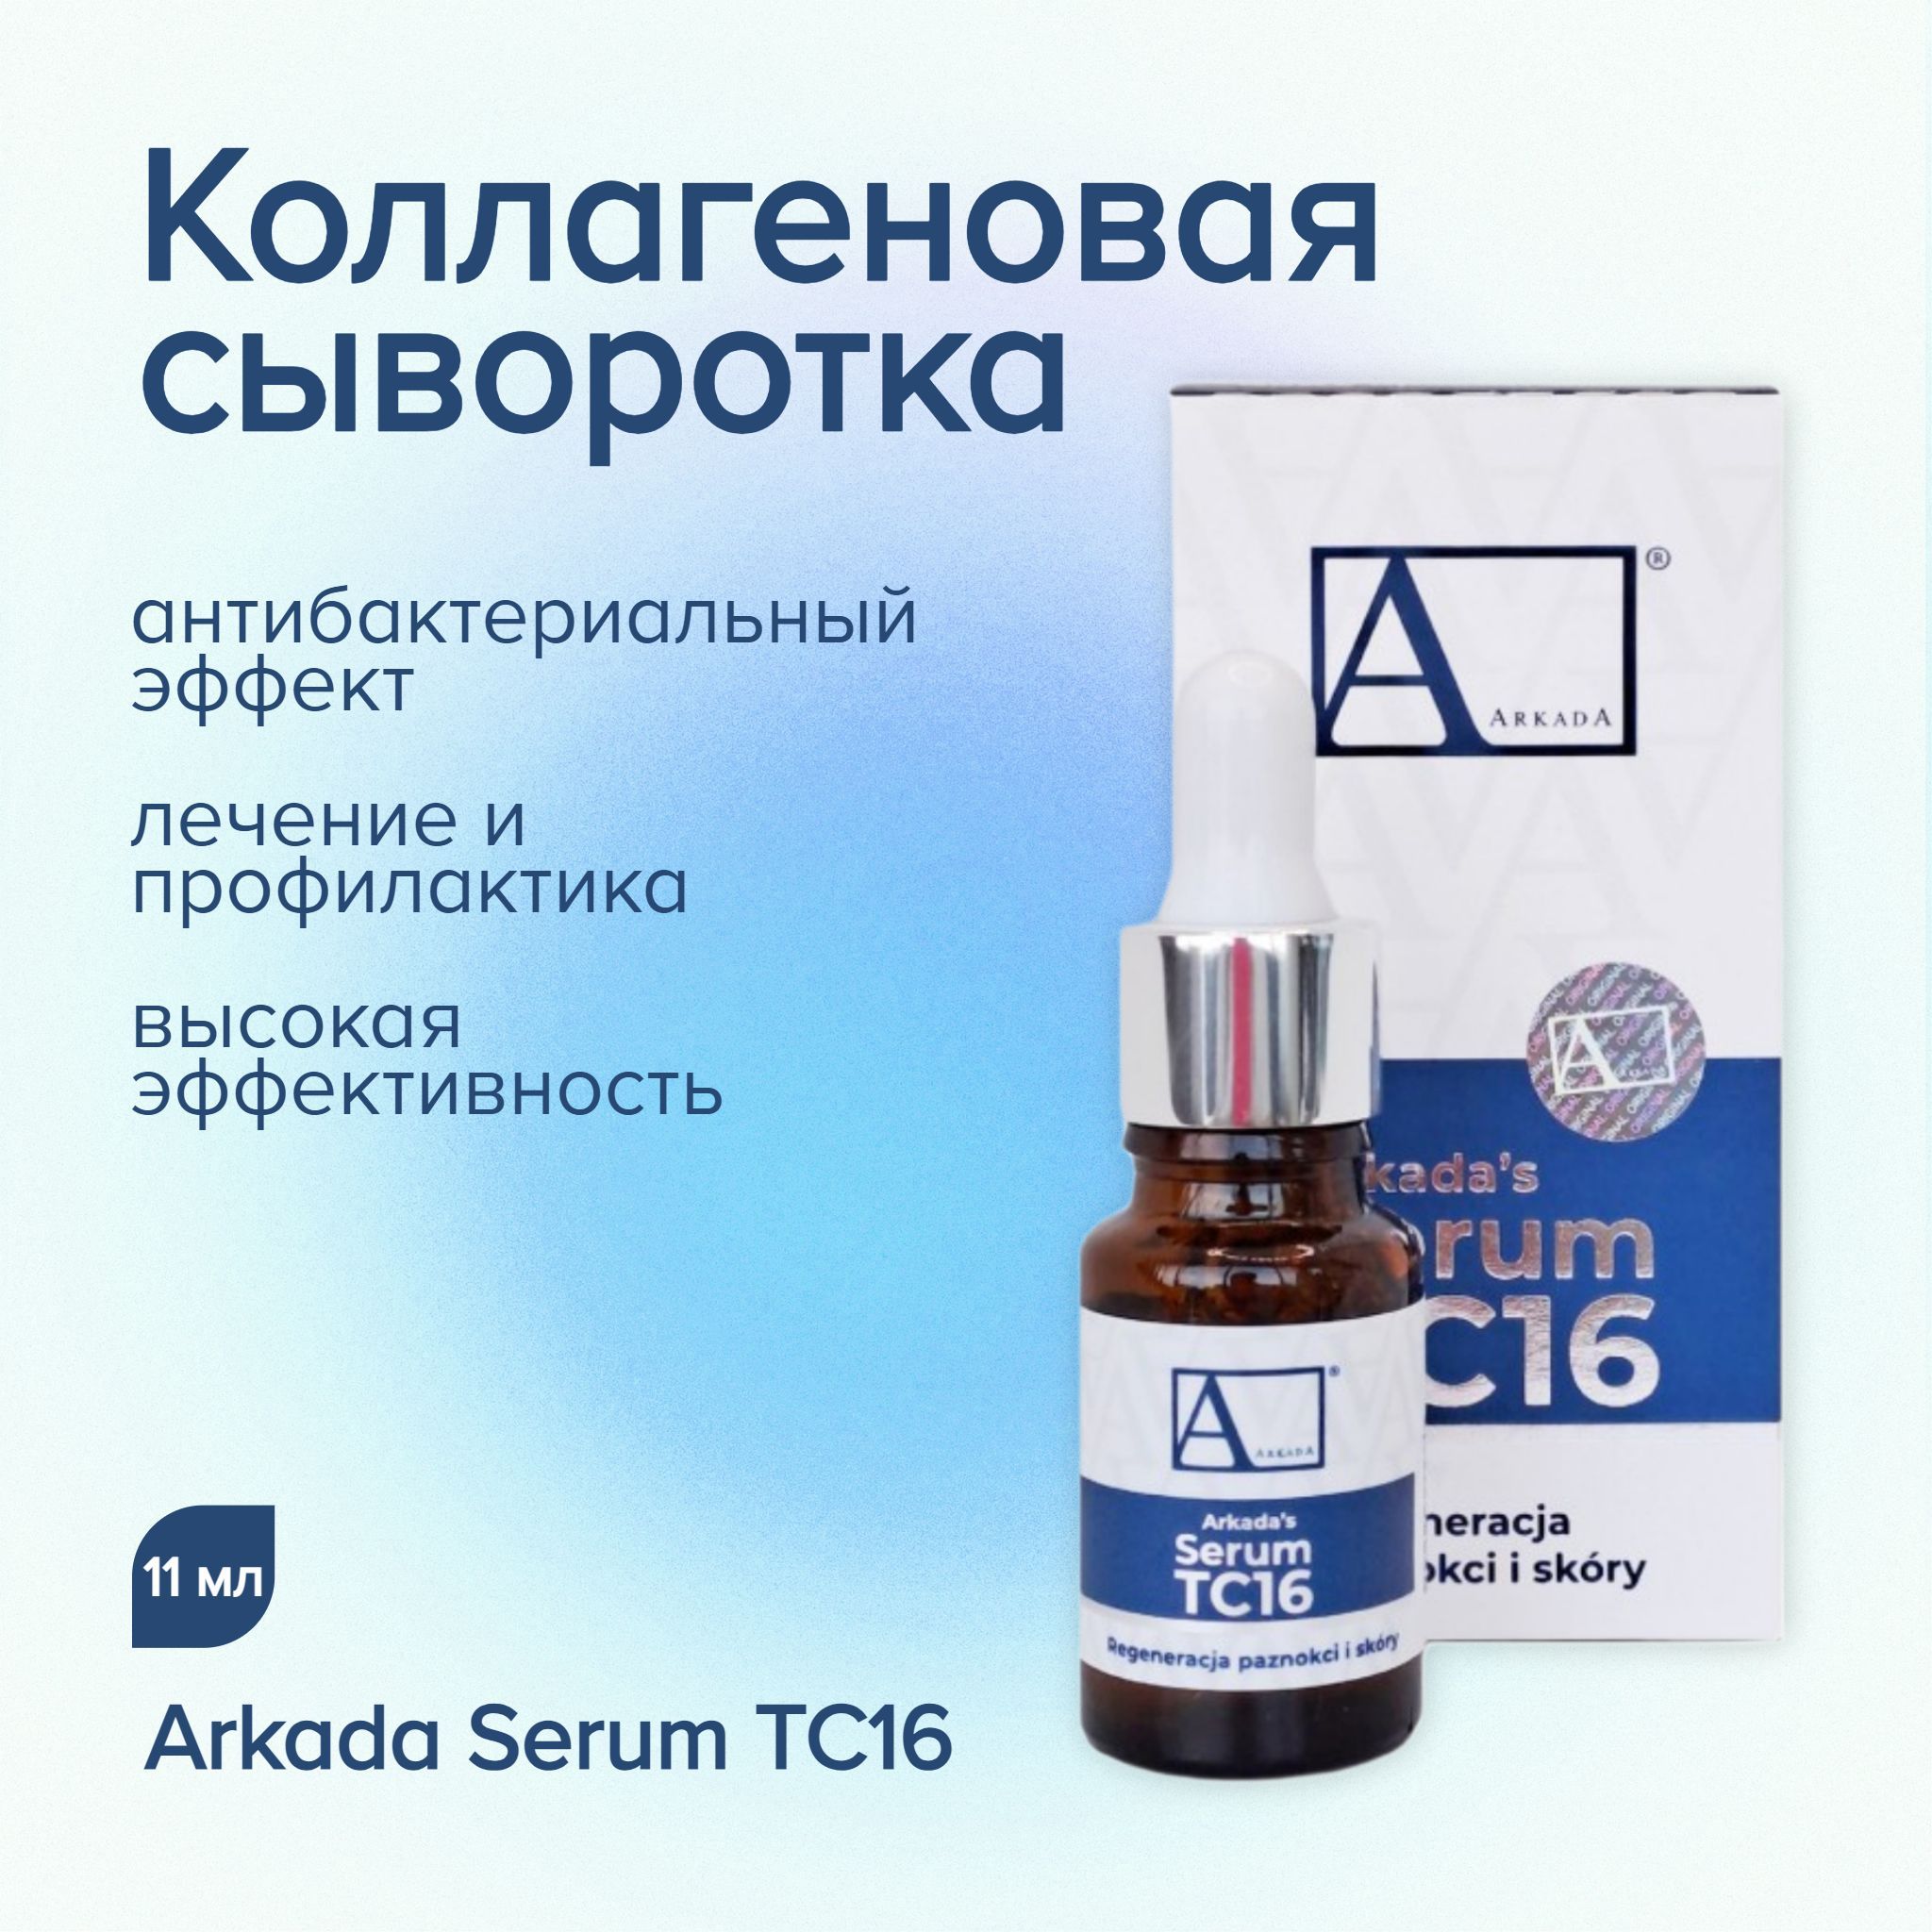 Arkada serum tc16